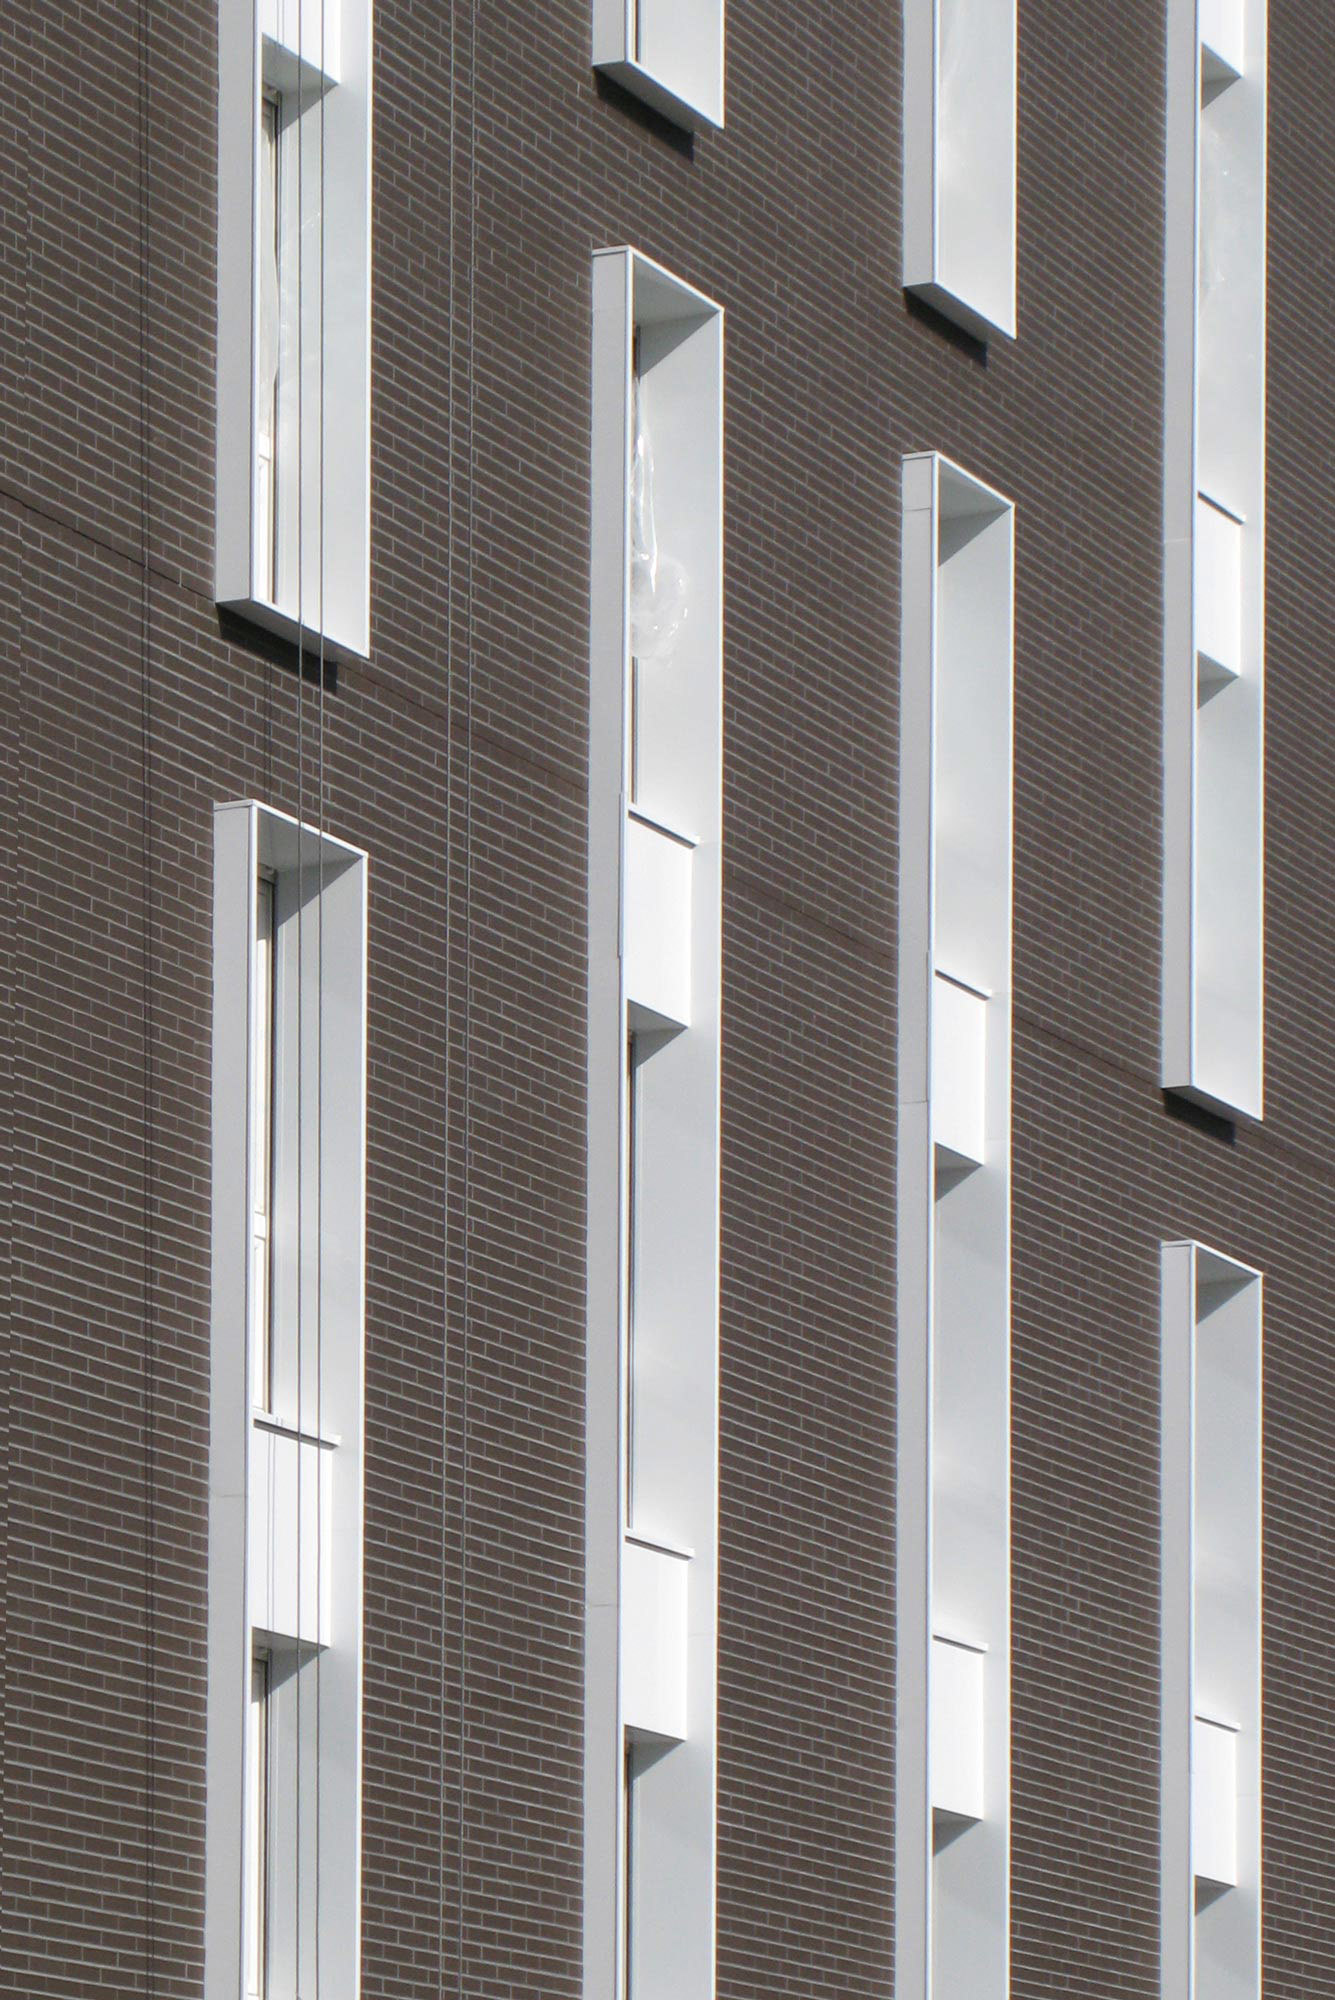 Villejuif, Logements, parement brique, HGA – Hubert Godet Architectes